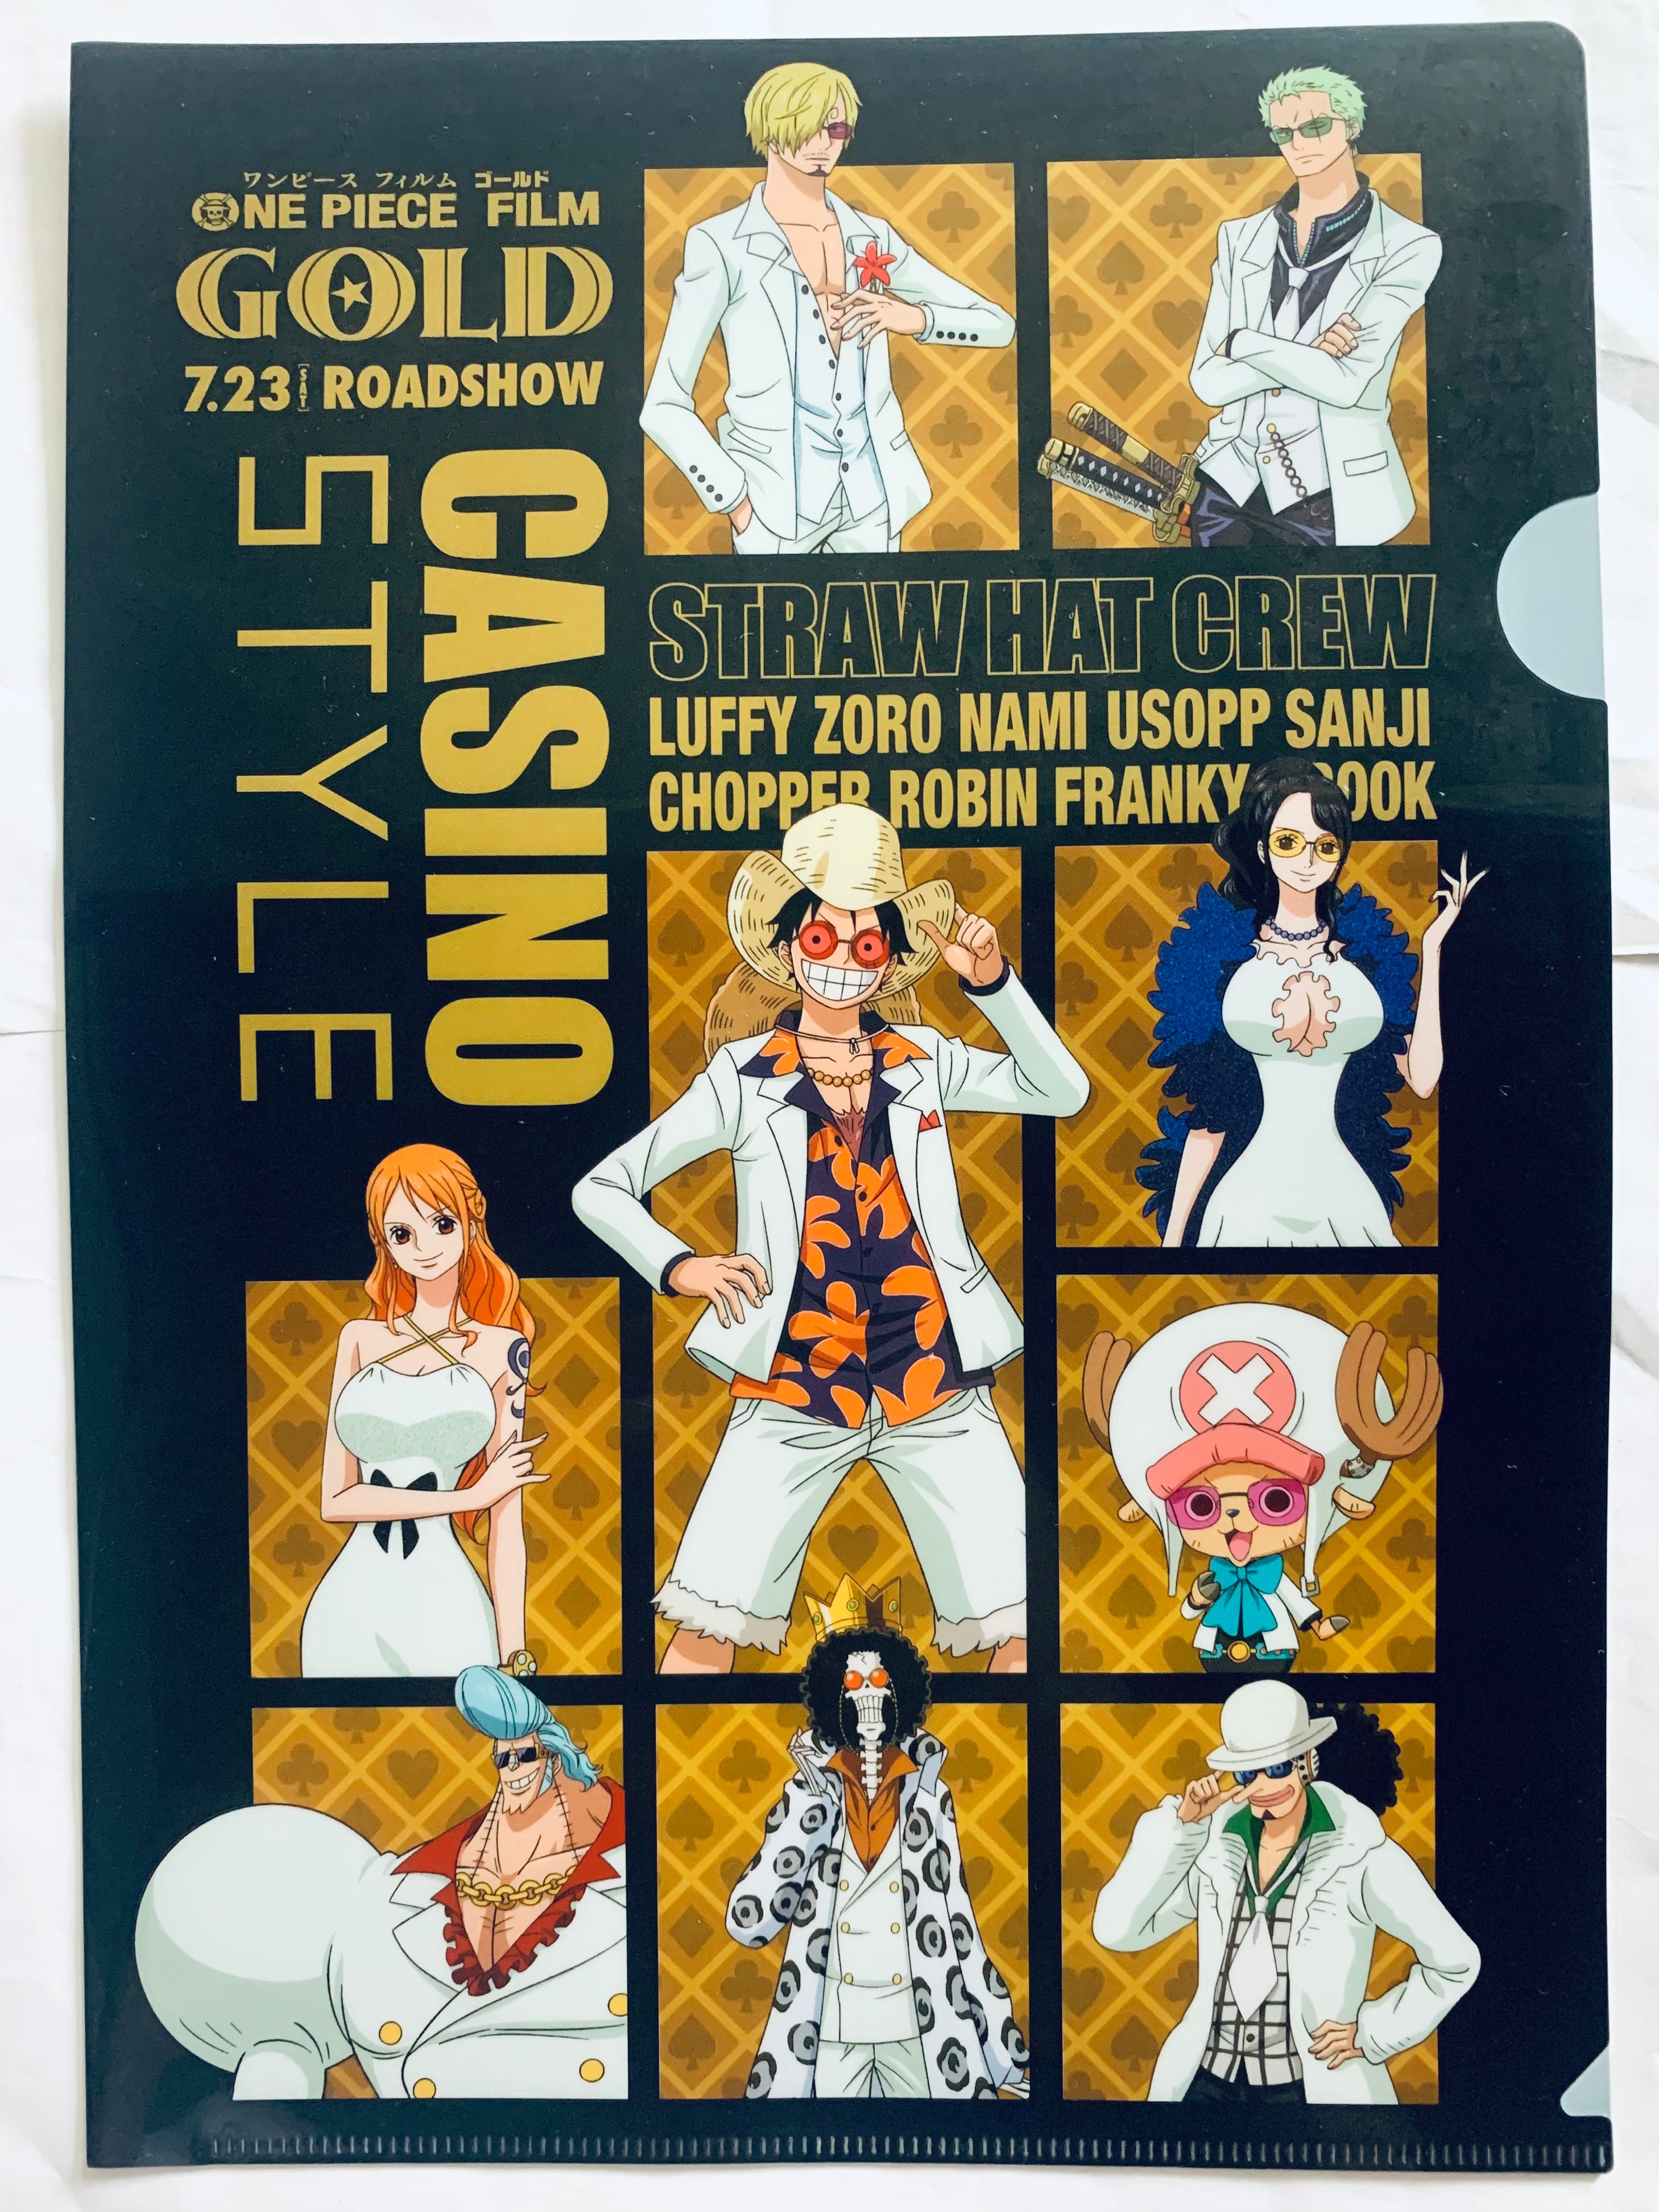 One piece film: GOLD Franky  One piece movies, One piece anime, Manga  anime one piece